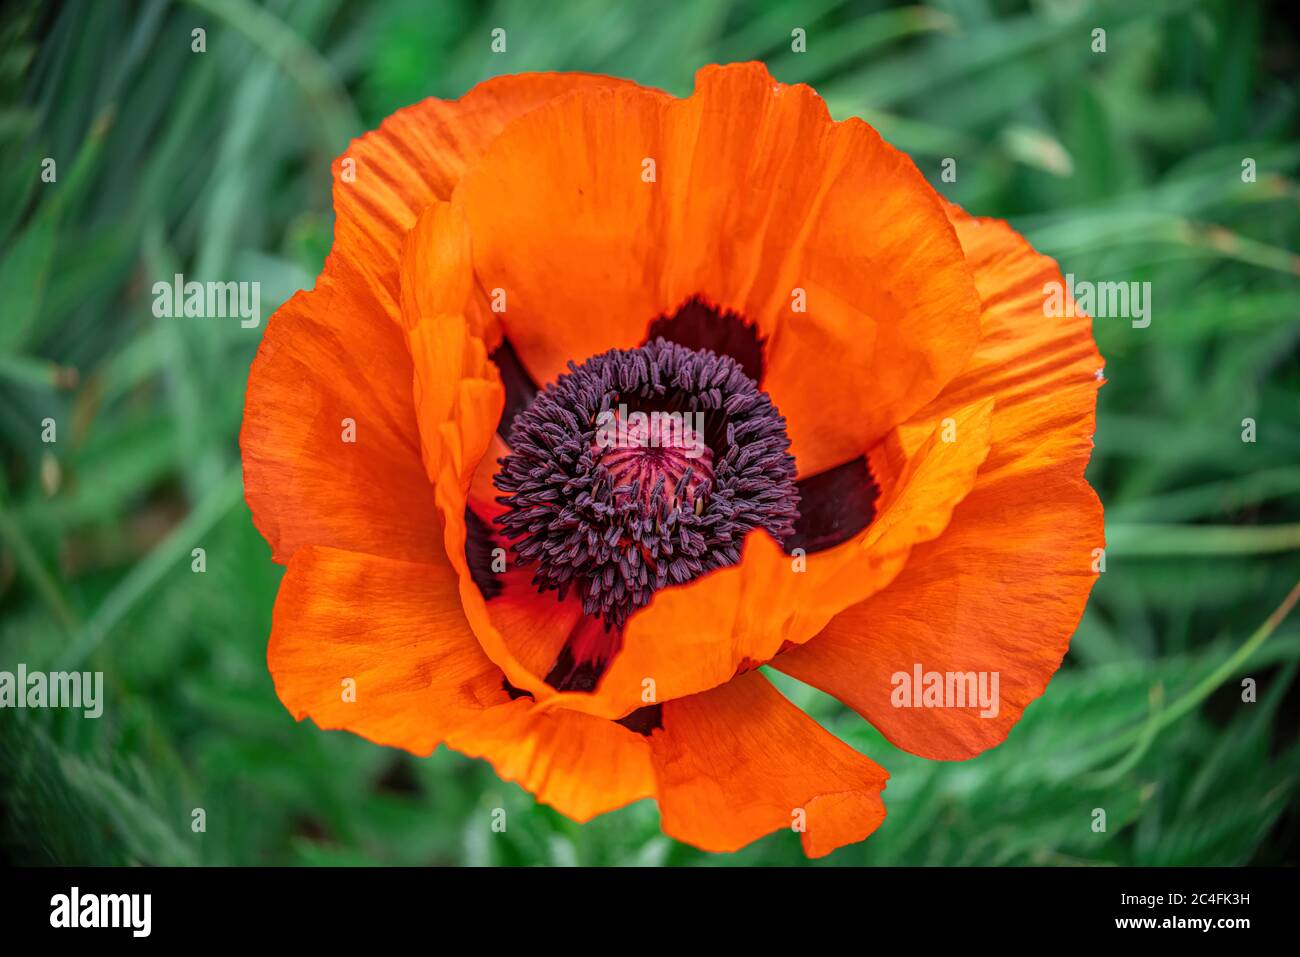 Closeup shot of a large orange poppy, single flower on leaf background Stock Photo